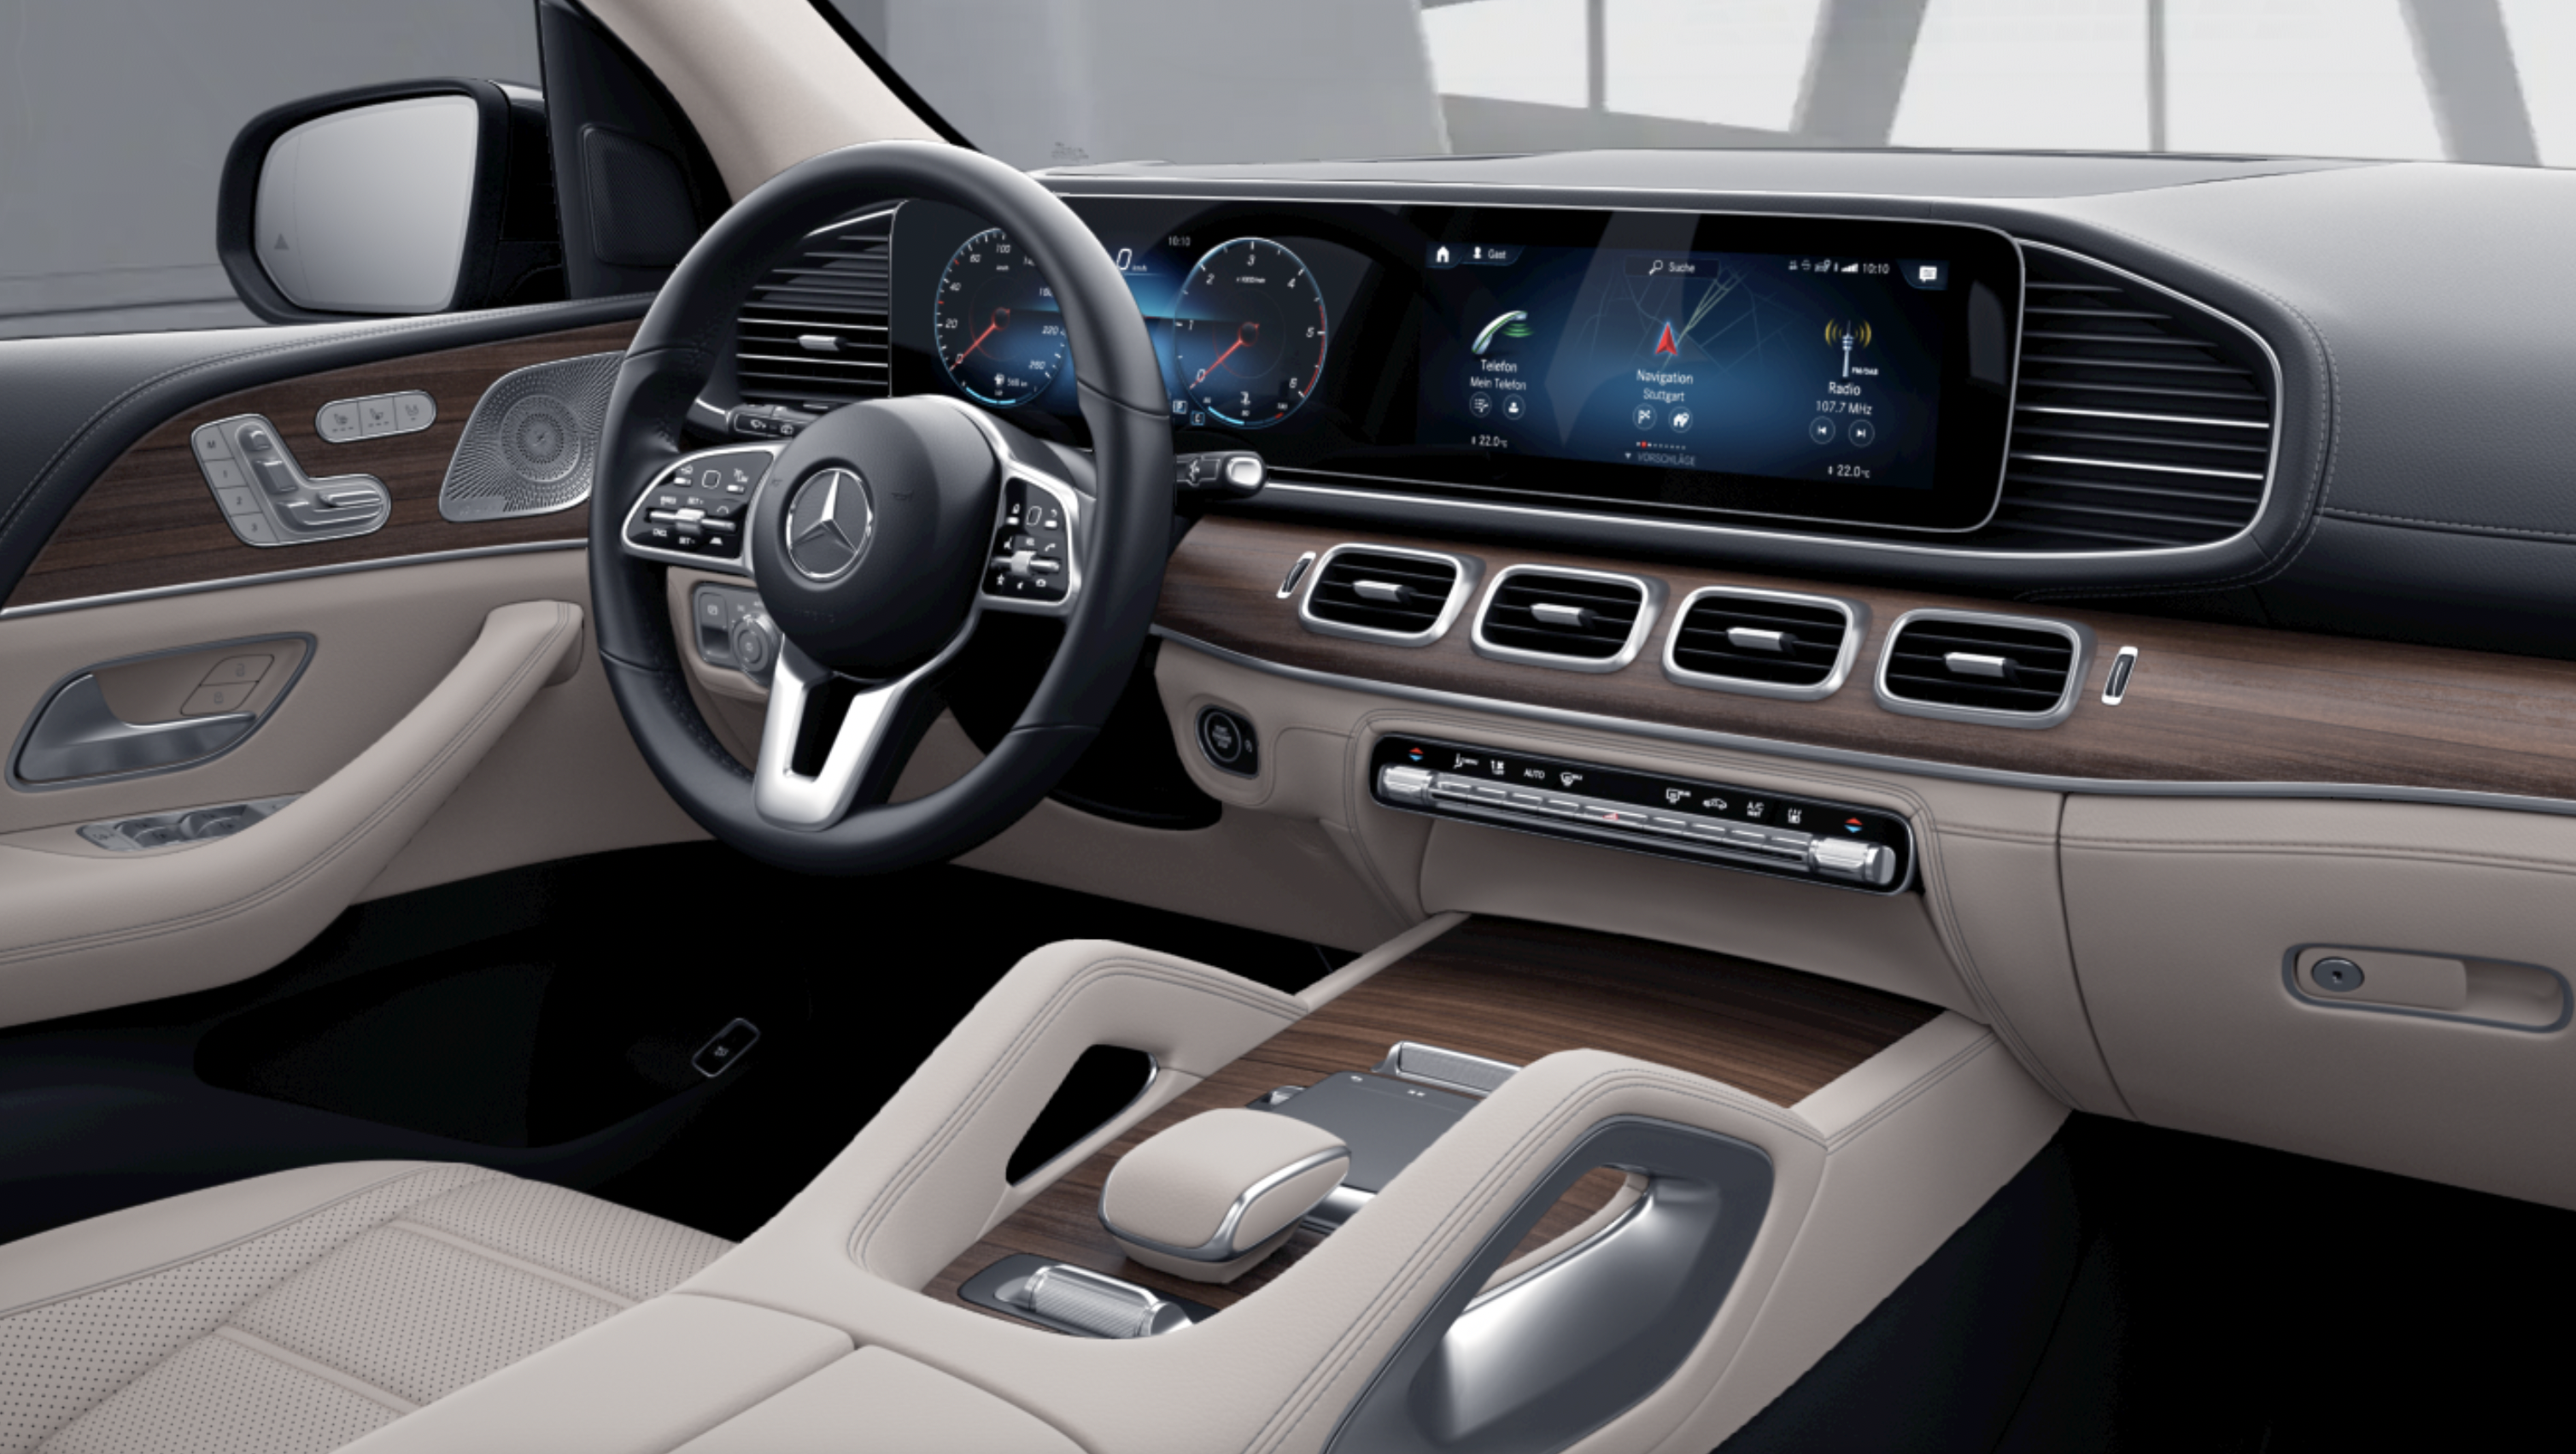 Mercedes GLS 400d 4matic AMG | nové české auto | skladem | ihned k předání | velké luxusní naftové SUV | černá s béžovou kůží | super výbava | skvělá cena 2.479.000,- Kč bez DPH | nákup online | auto eshop | AUTOiBUY.com